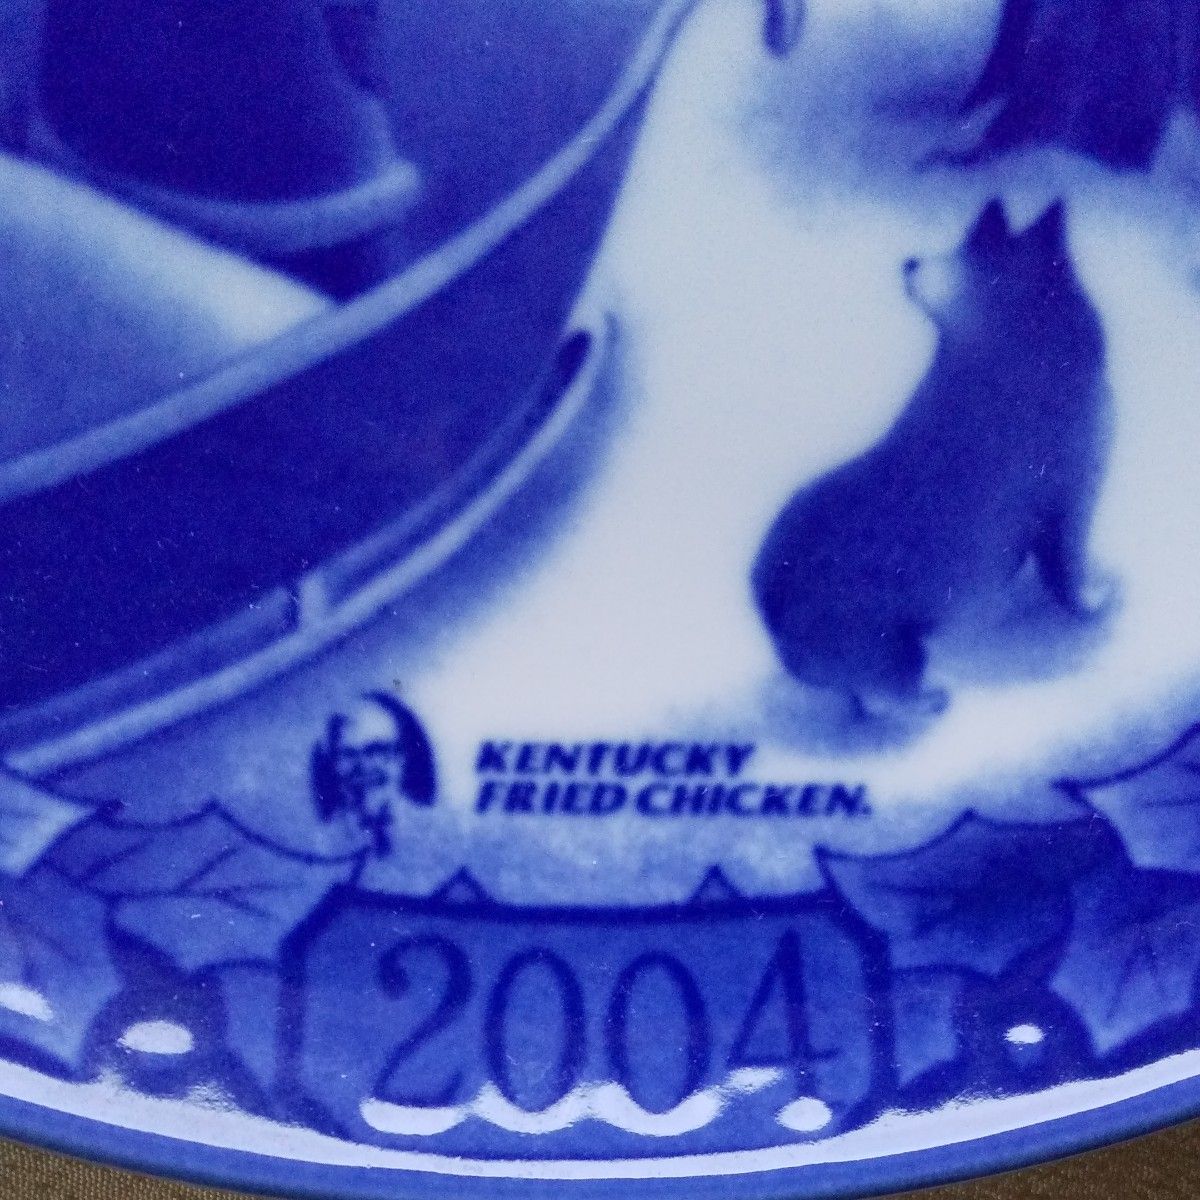 新品 クリスマスプレート ケンタッキーフライドチキン 丸皿 絵皿 青い皿 2004年 食器 キッチン 皿 インテリア ヴィンテージ